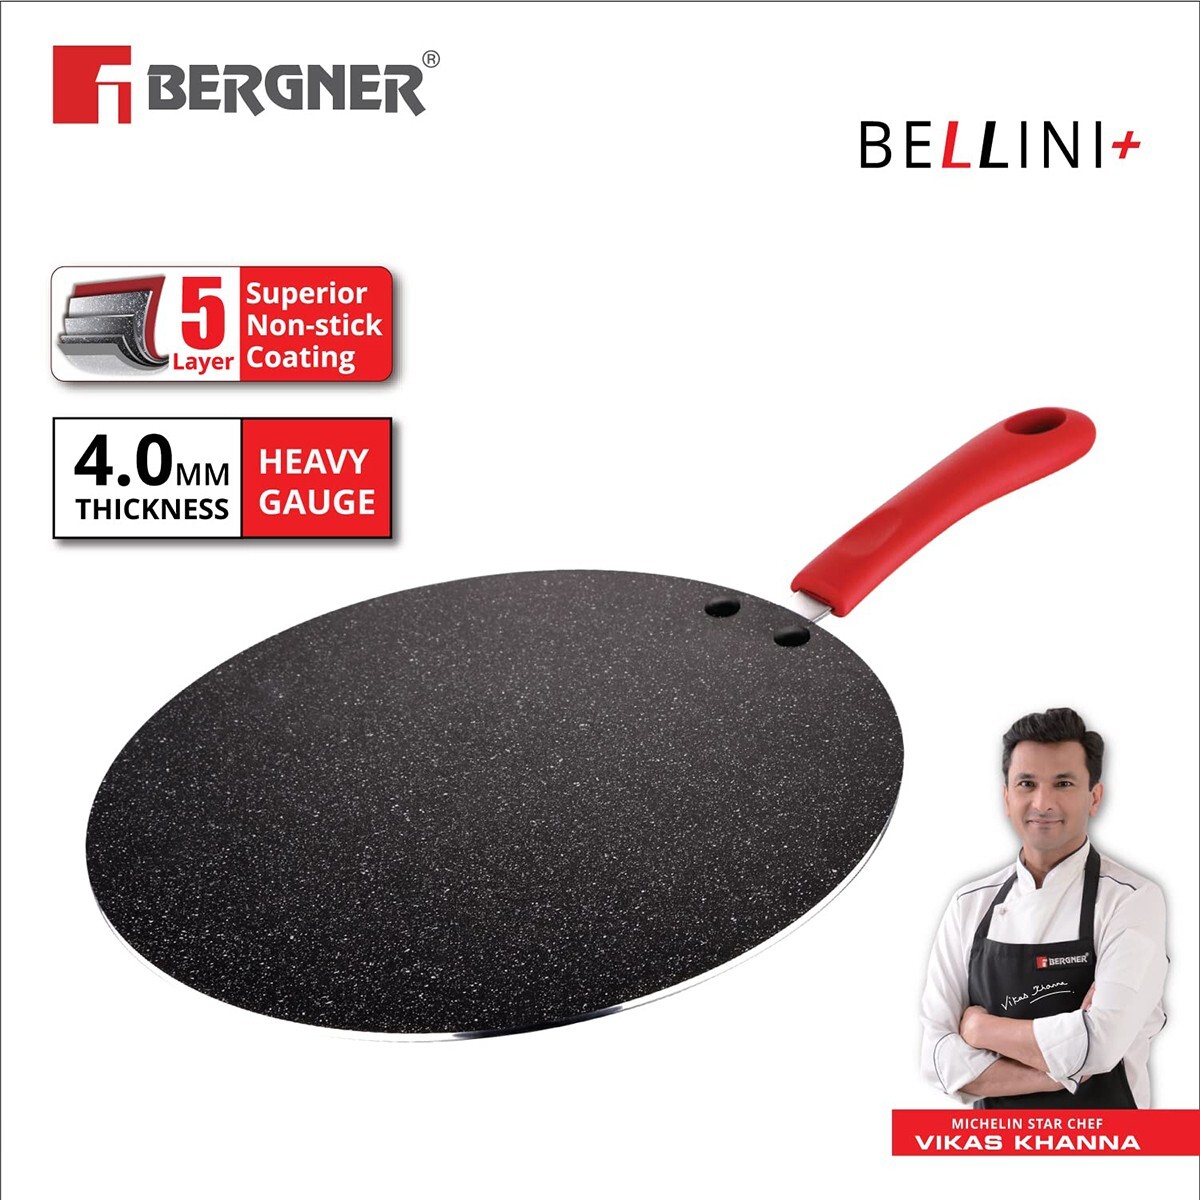 Bergner Bellini Flat Tawa 28cm 31255